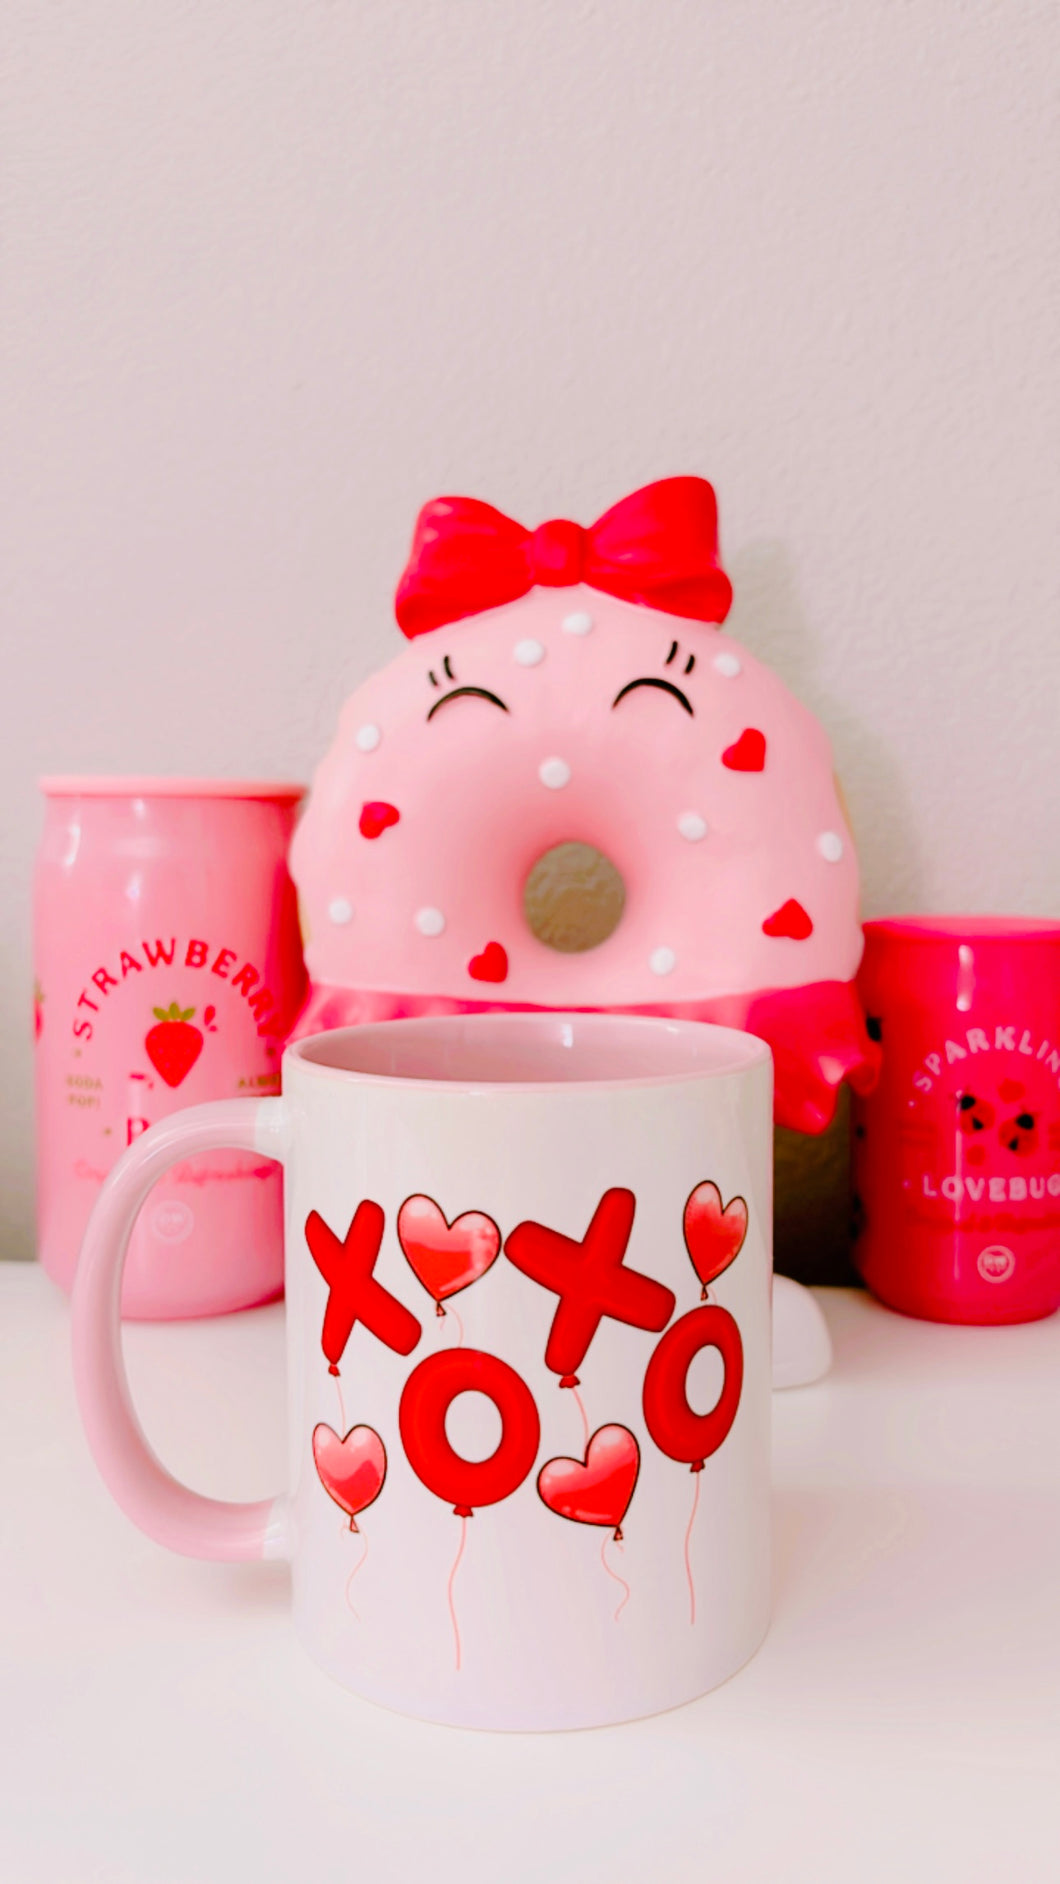 Xoxo balloon mug